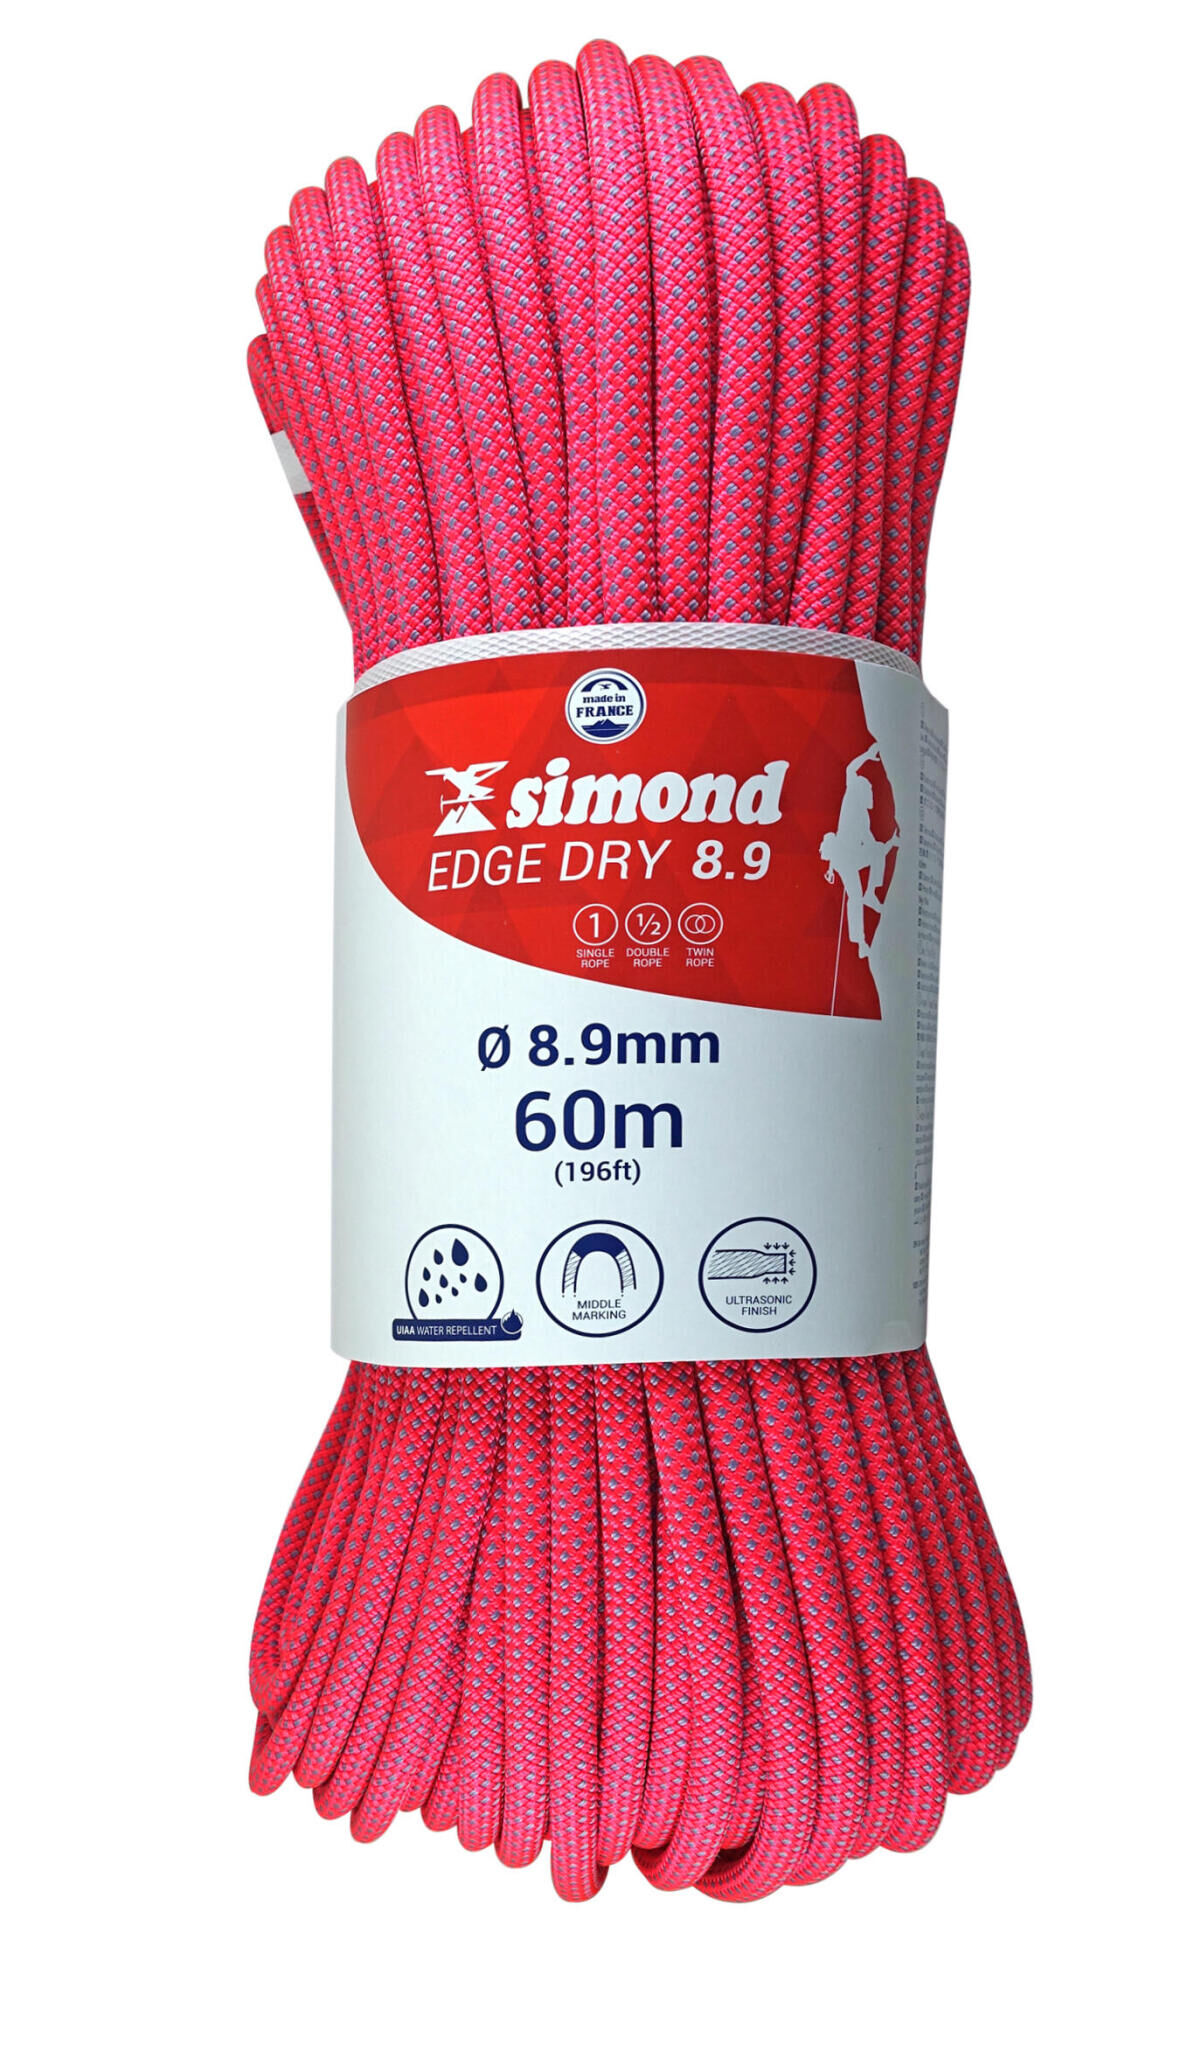 corde edge dry 8.9 60m simond 2018